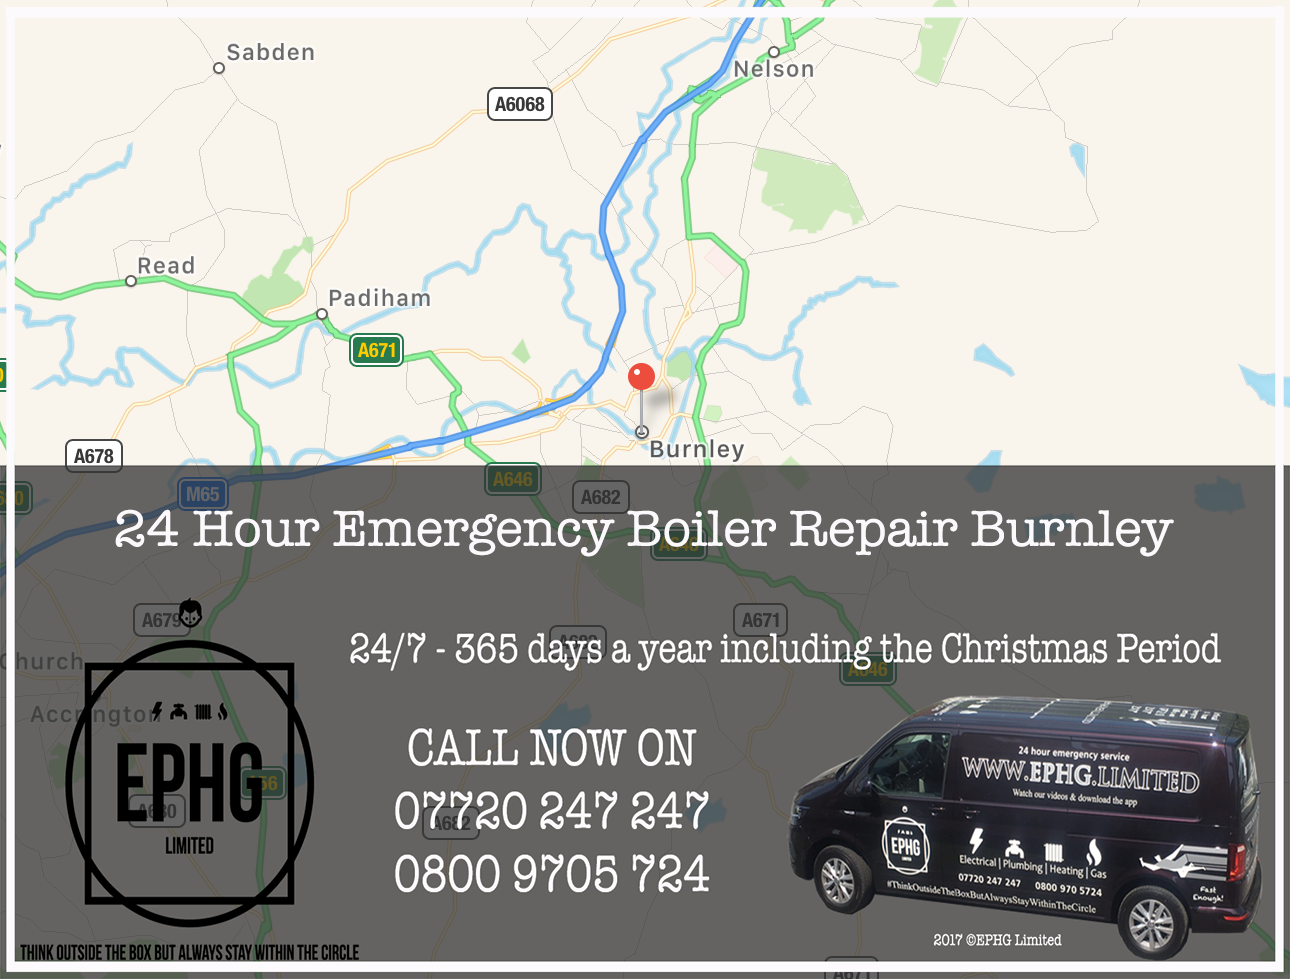 24 Hour Emergency Boiler Repair Burnley